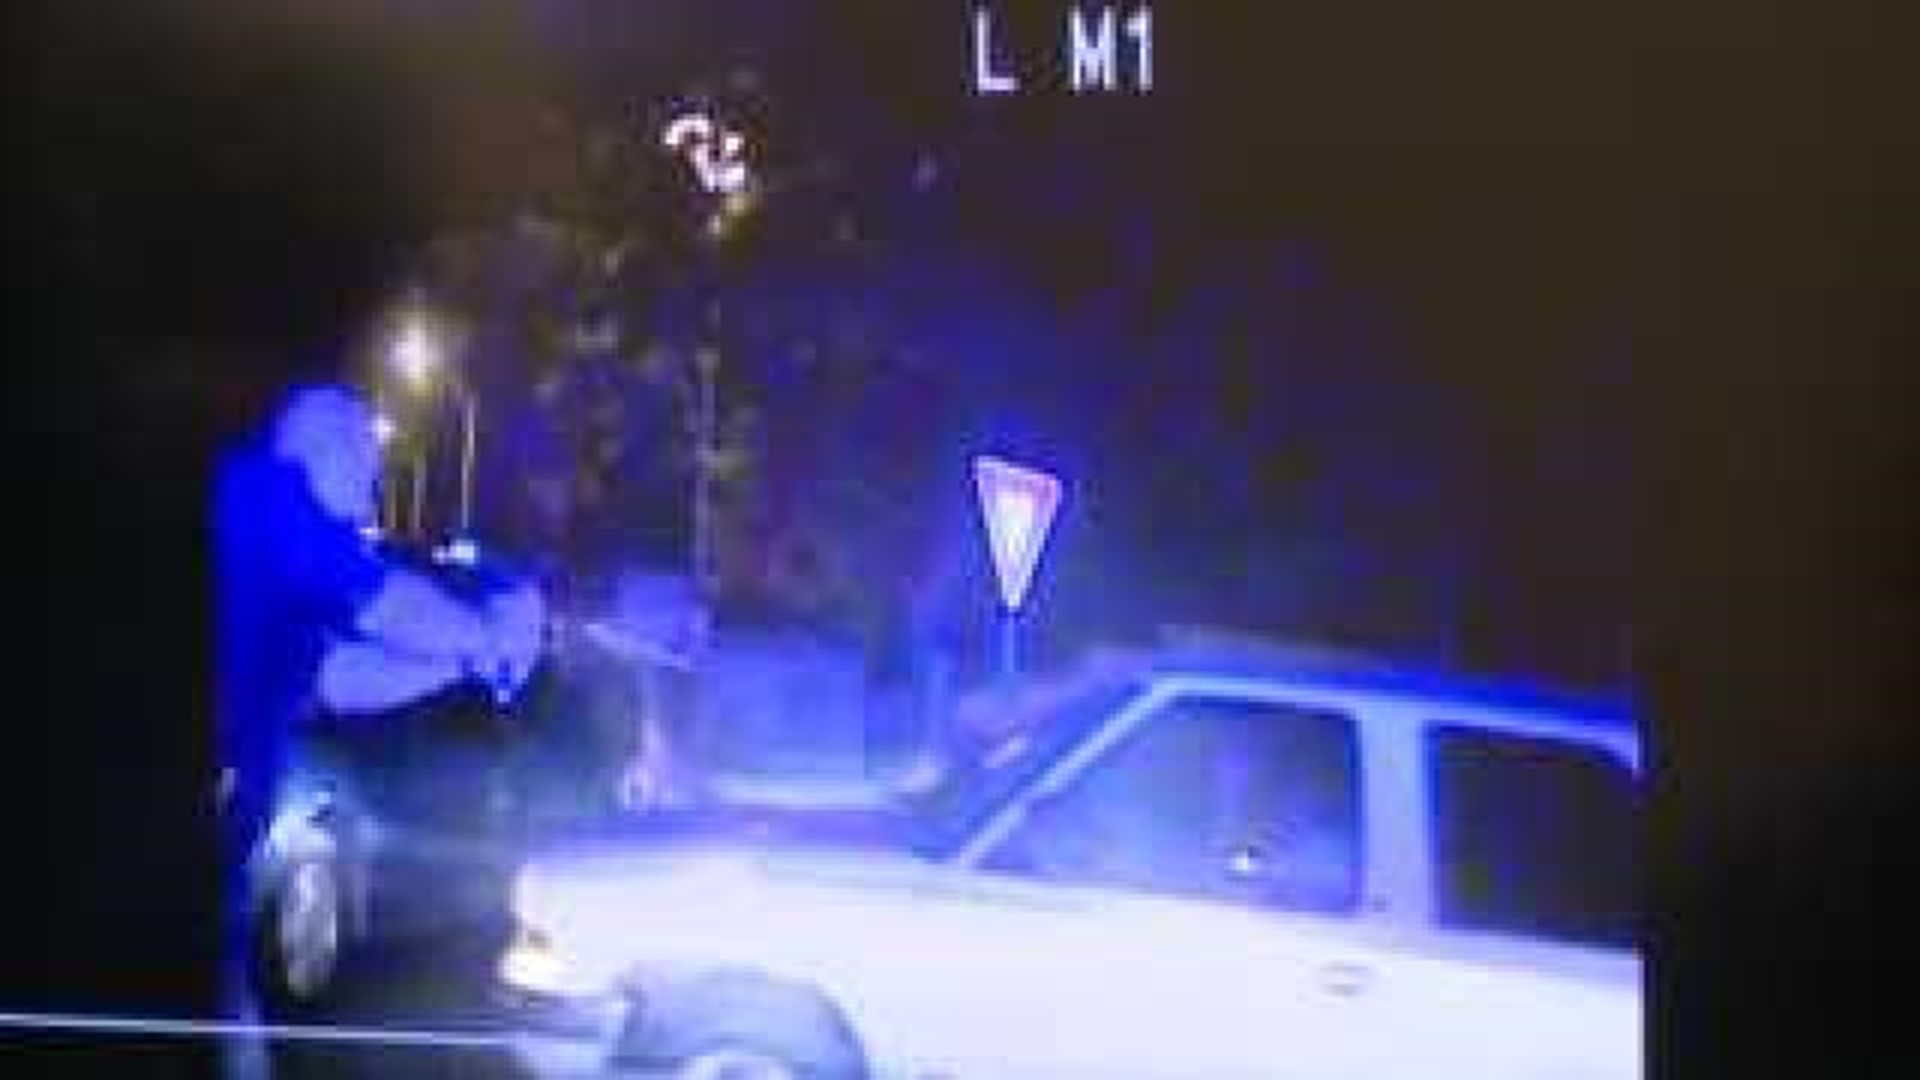 Raw Video: Davenport Police-involved shooting